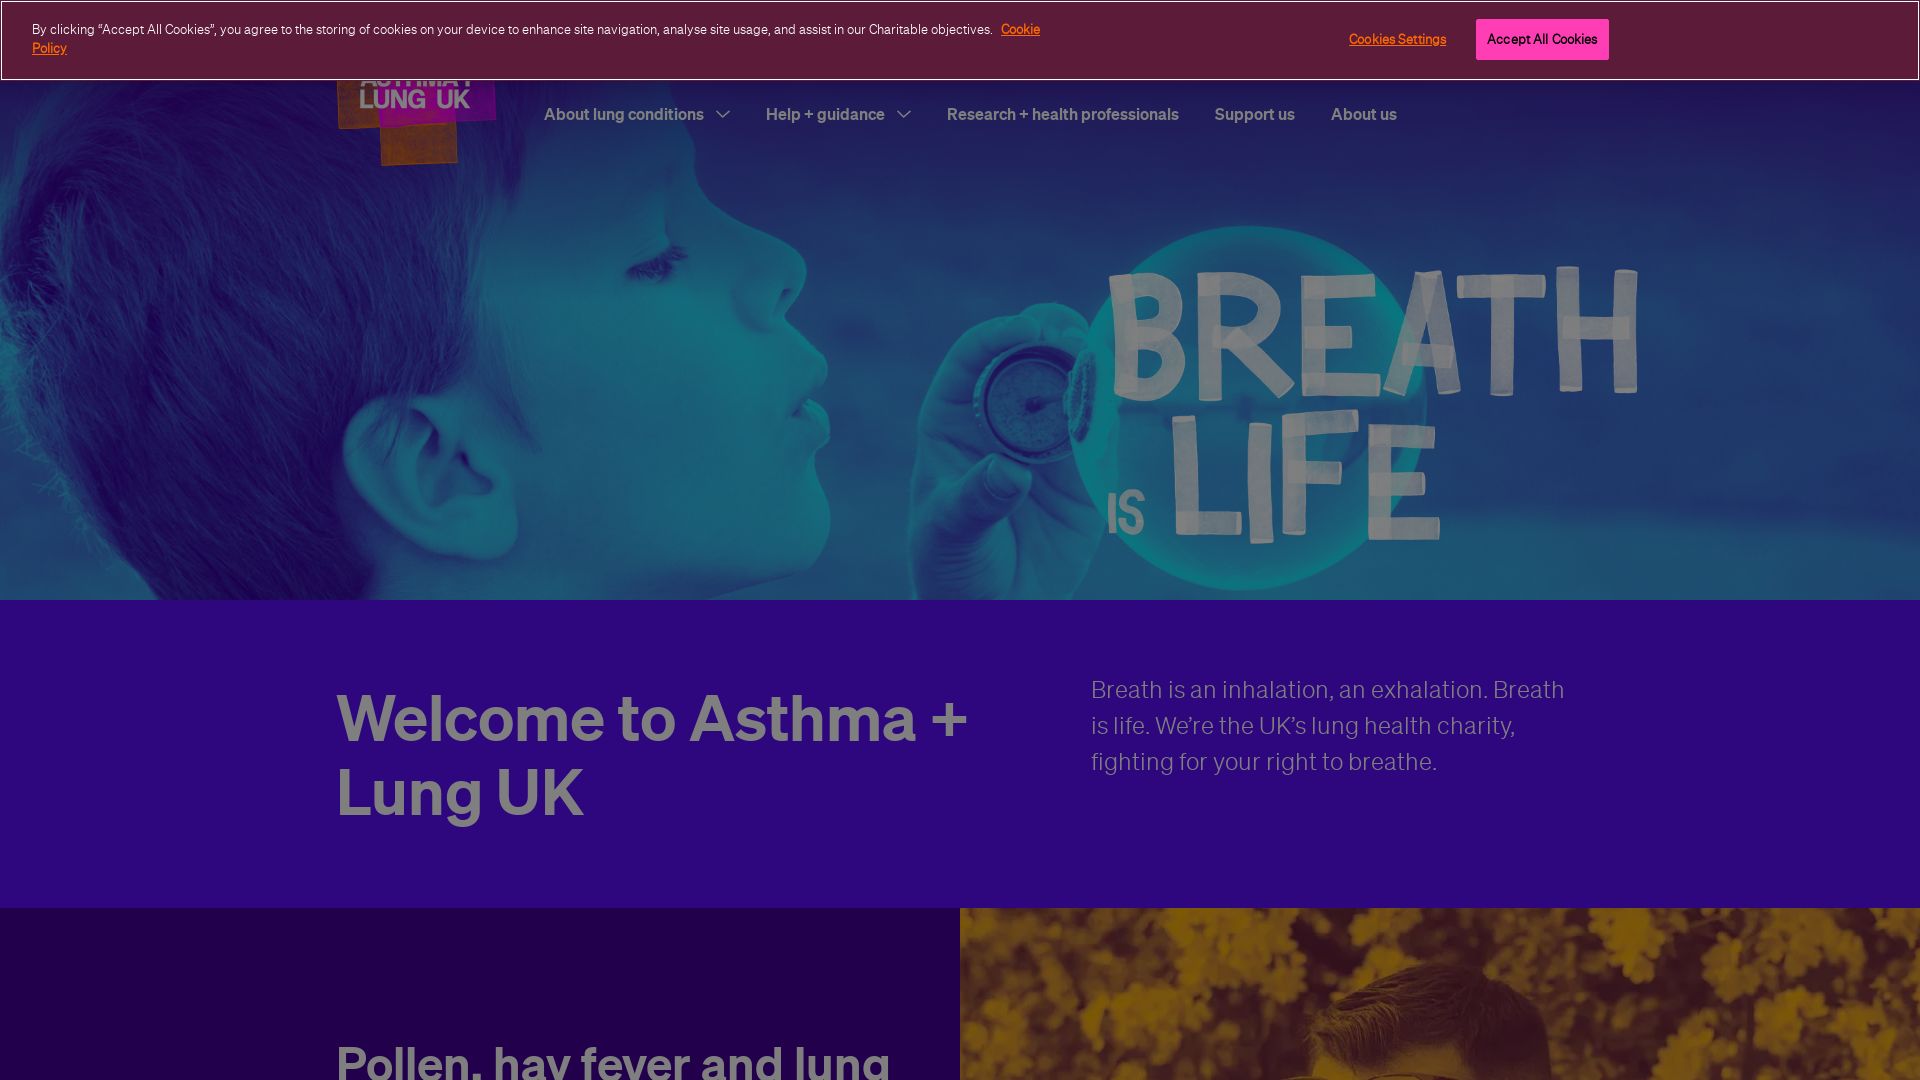 État du site web asthma.org.uk est   EN LIGNE